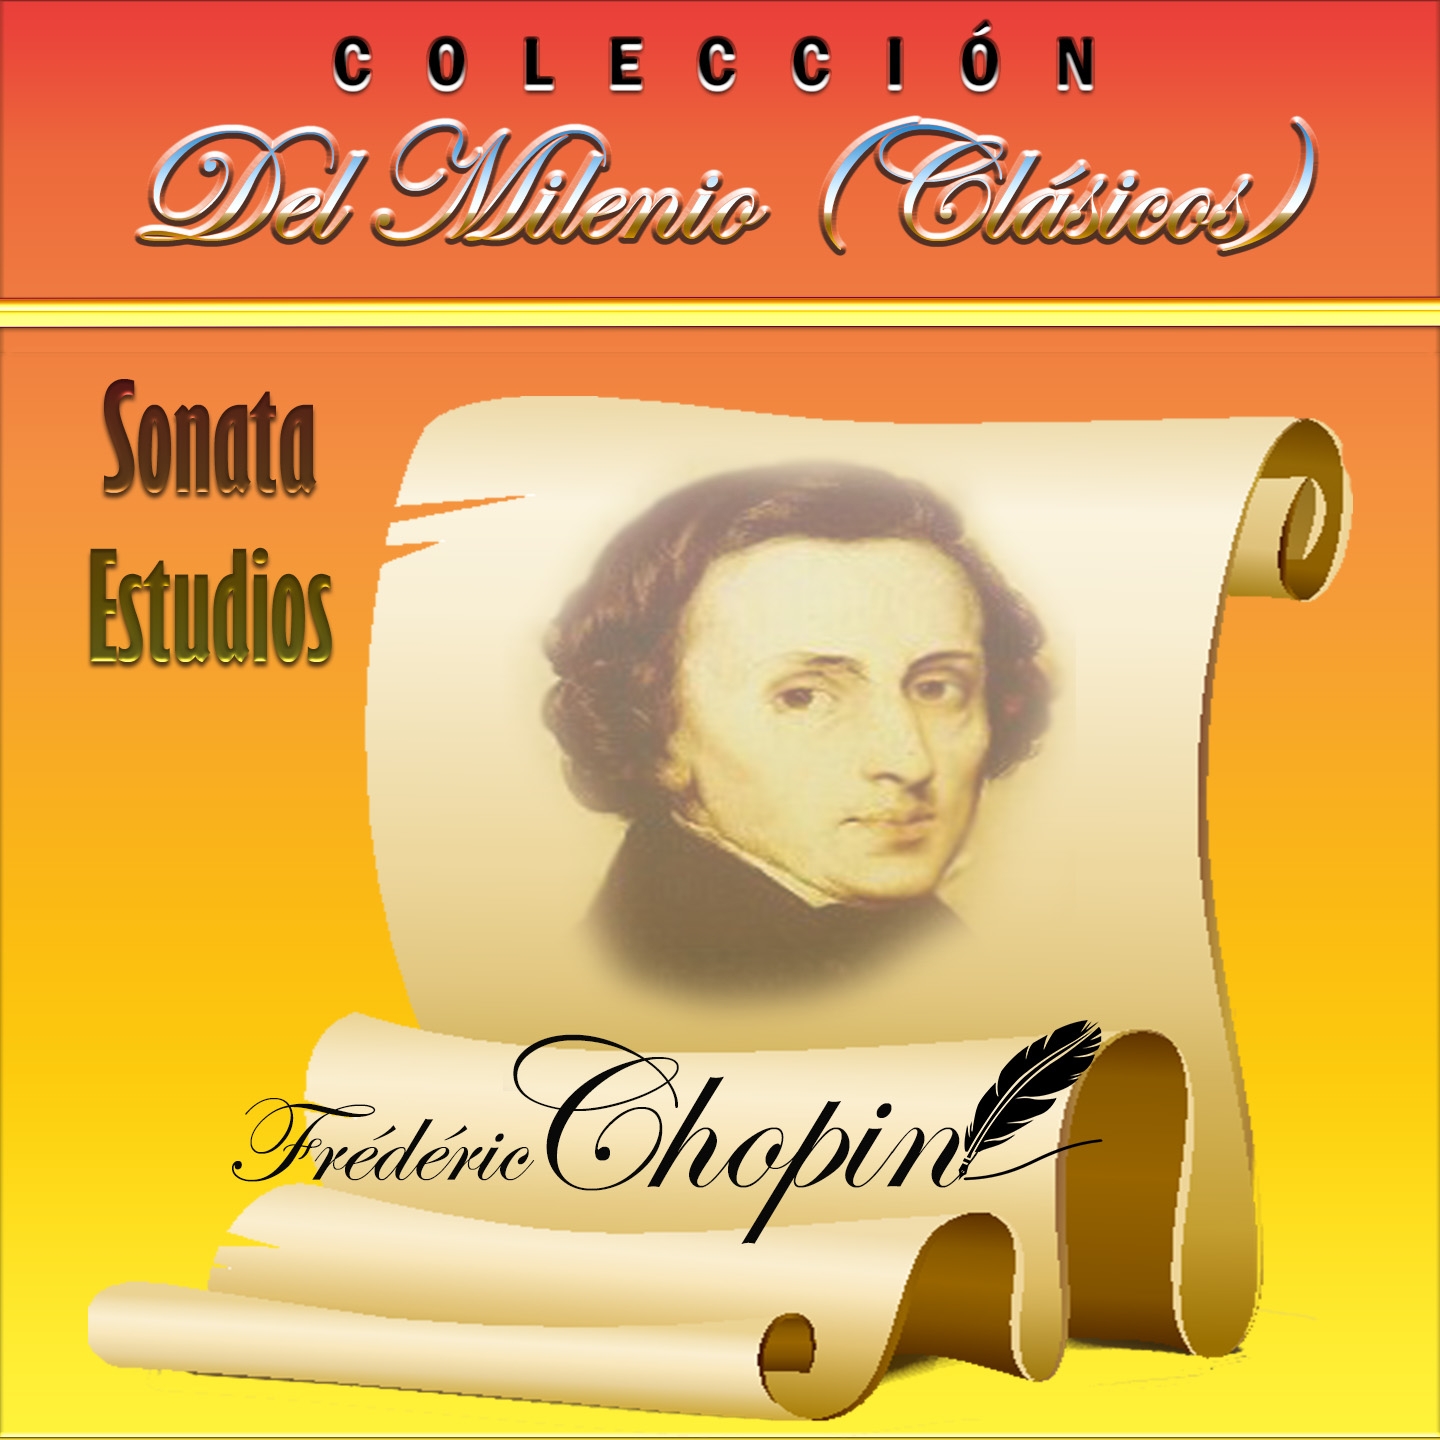 Coleccio n del Milenio: Sonata y Estudios